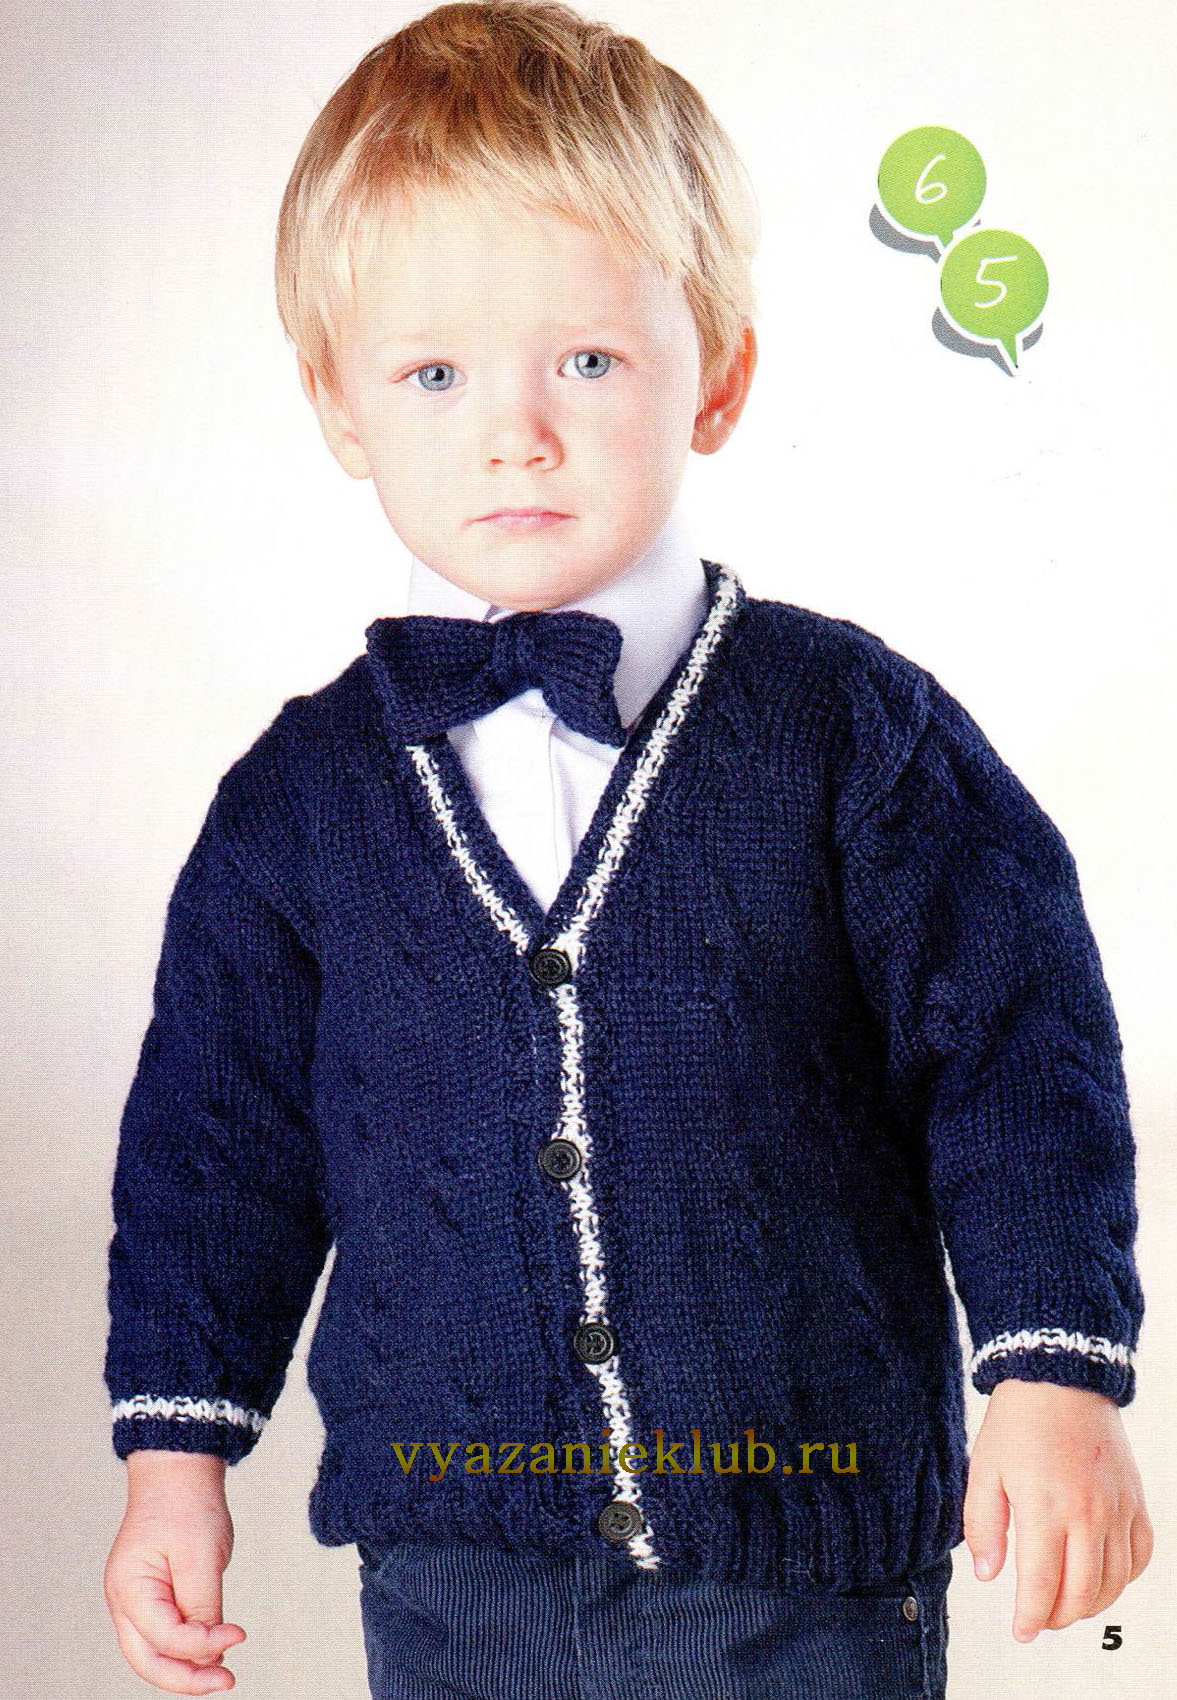 Гардероб Мастер-класс Вязание спицами Кофта с рукавами реглан для ребенка 3-4 лет Пряжа Пуговицы